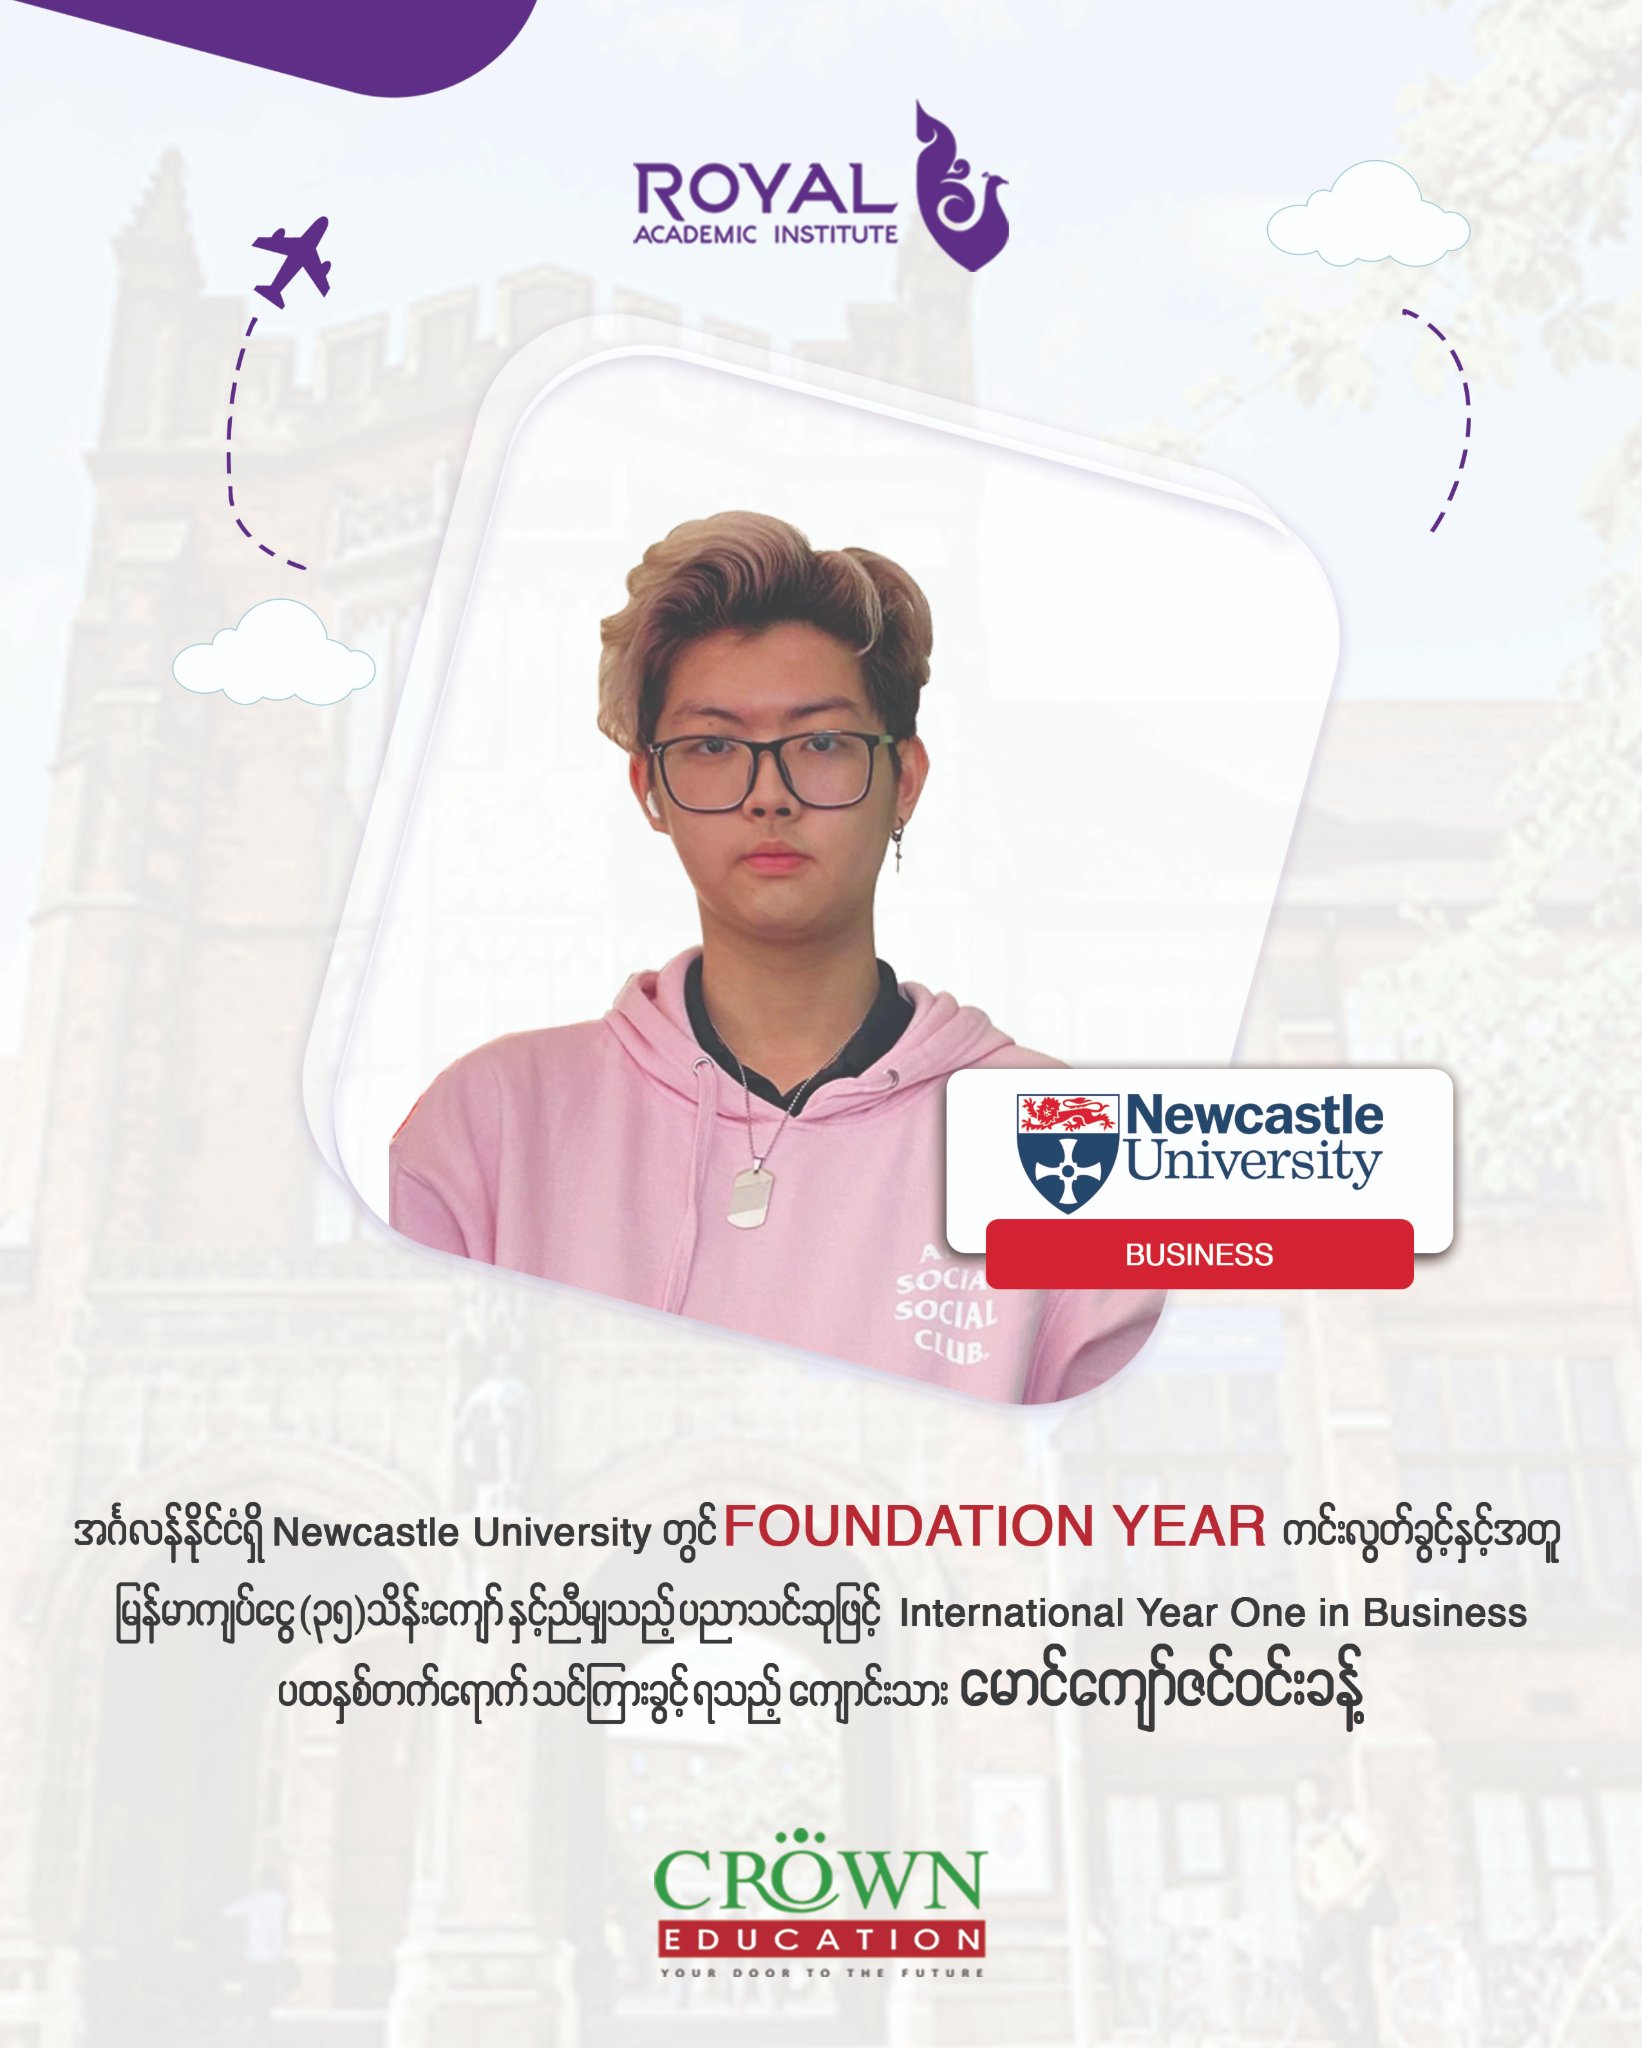 ❝အင်္ဂလန်နိုင်ငံရှိ Newcastle University တွင် Foundation Year ကင်းလွတ်ခွင့်နှင့်အတူ မြန်မာကျပ်ငွေ (၃၅)သိန်းကျော်နှင့် ညီမျှသည့် ပညာသင်ဆုဖြင့် International Year One in Business ပထမနှစ်တက်ရောက်သင်ကြားခွင့်ရသည့် ကျောင်းသား မောင်ကျော်ဇင်ဝင်းခန့်❞